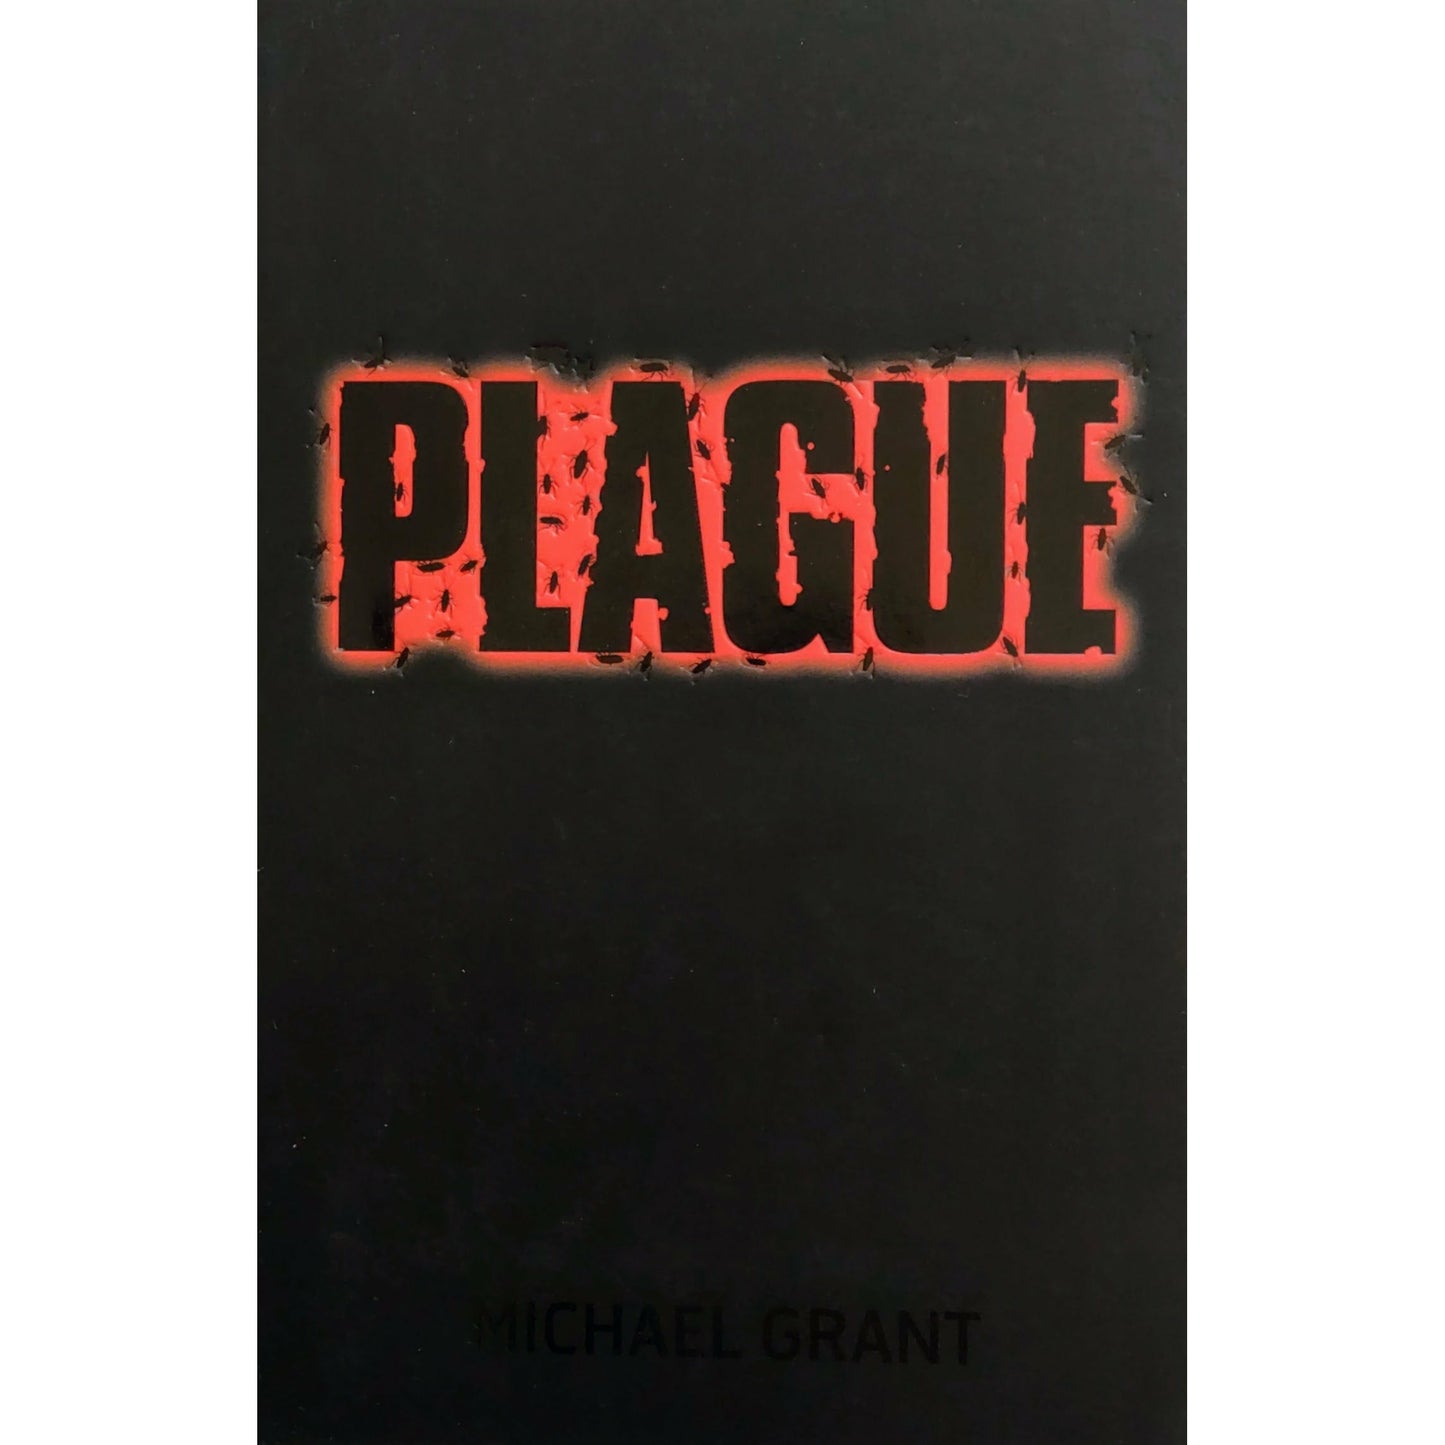 Grant, Michael: Plague - Gone 4